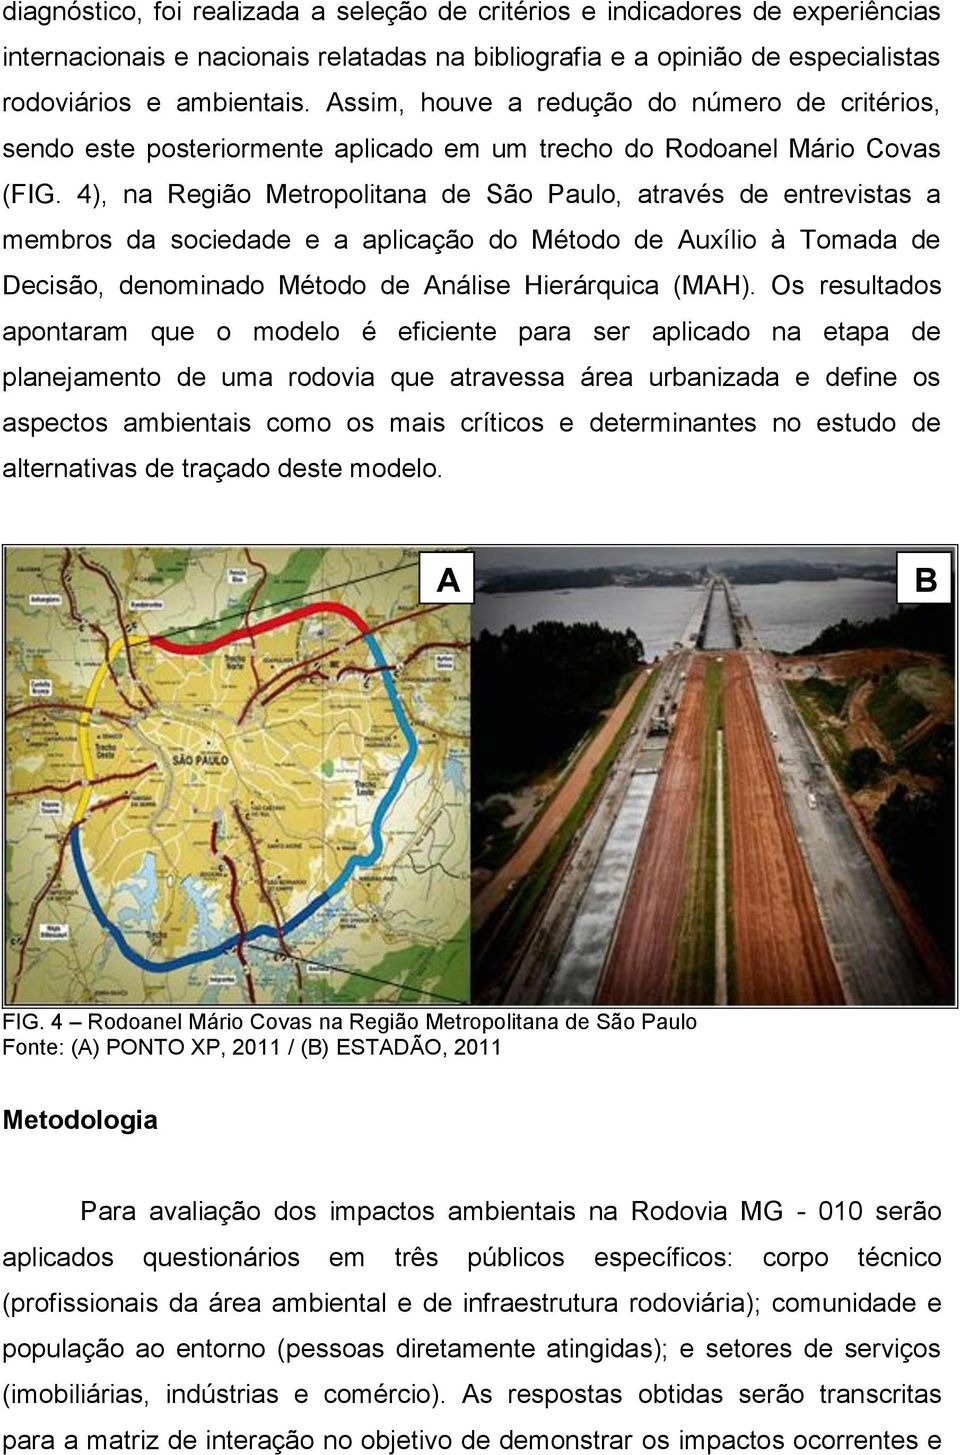 4), na Região Metropolitana de São Paulo, através de entrevistas a membros da sociedade e a aplicação do Método de Auxílio à Tomada de Decisão, denominado Método de Análise Hierárquica (MAH).